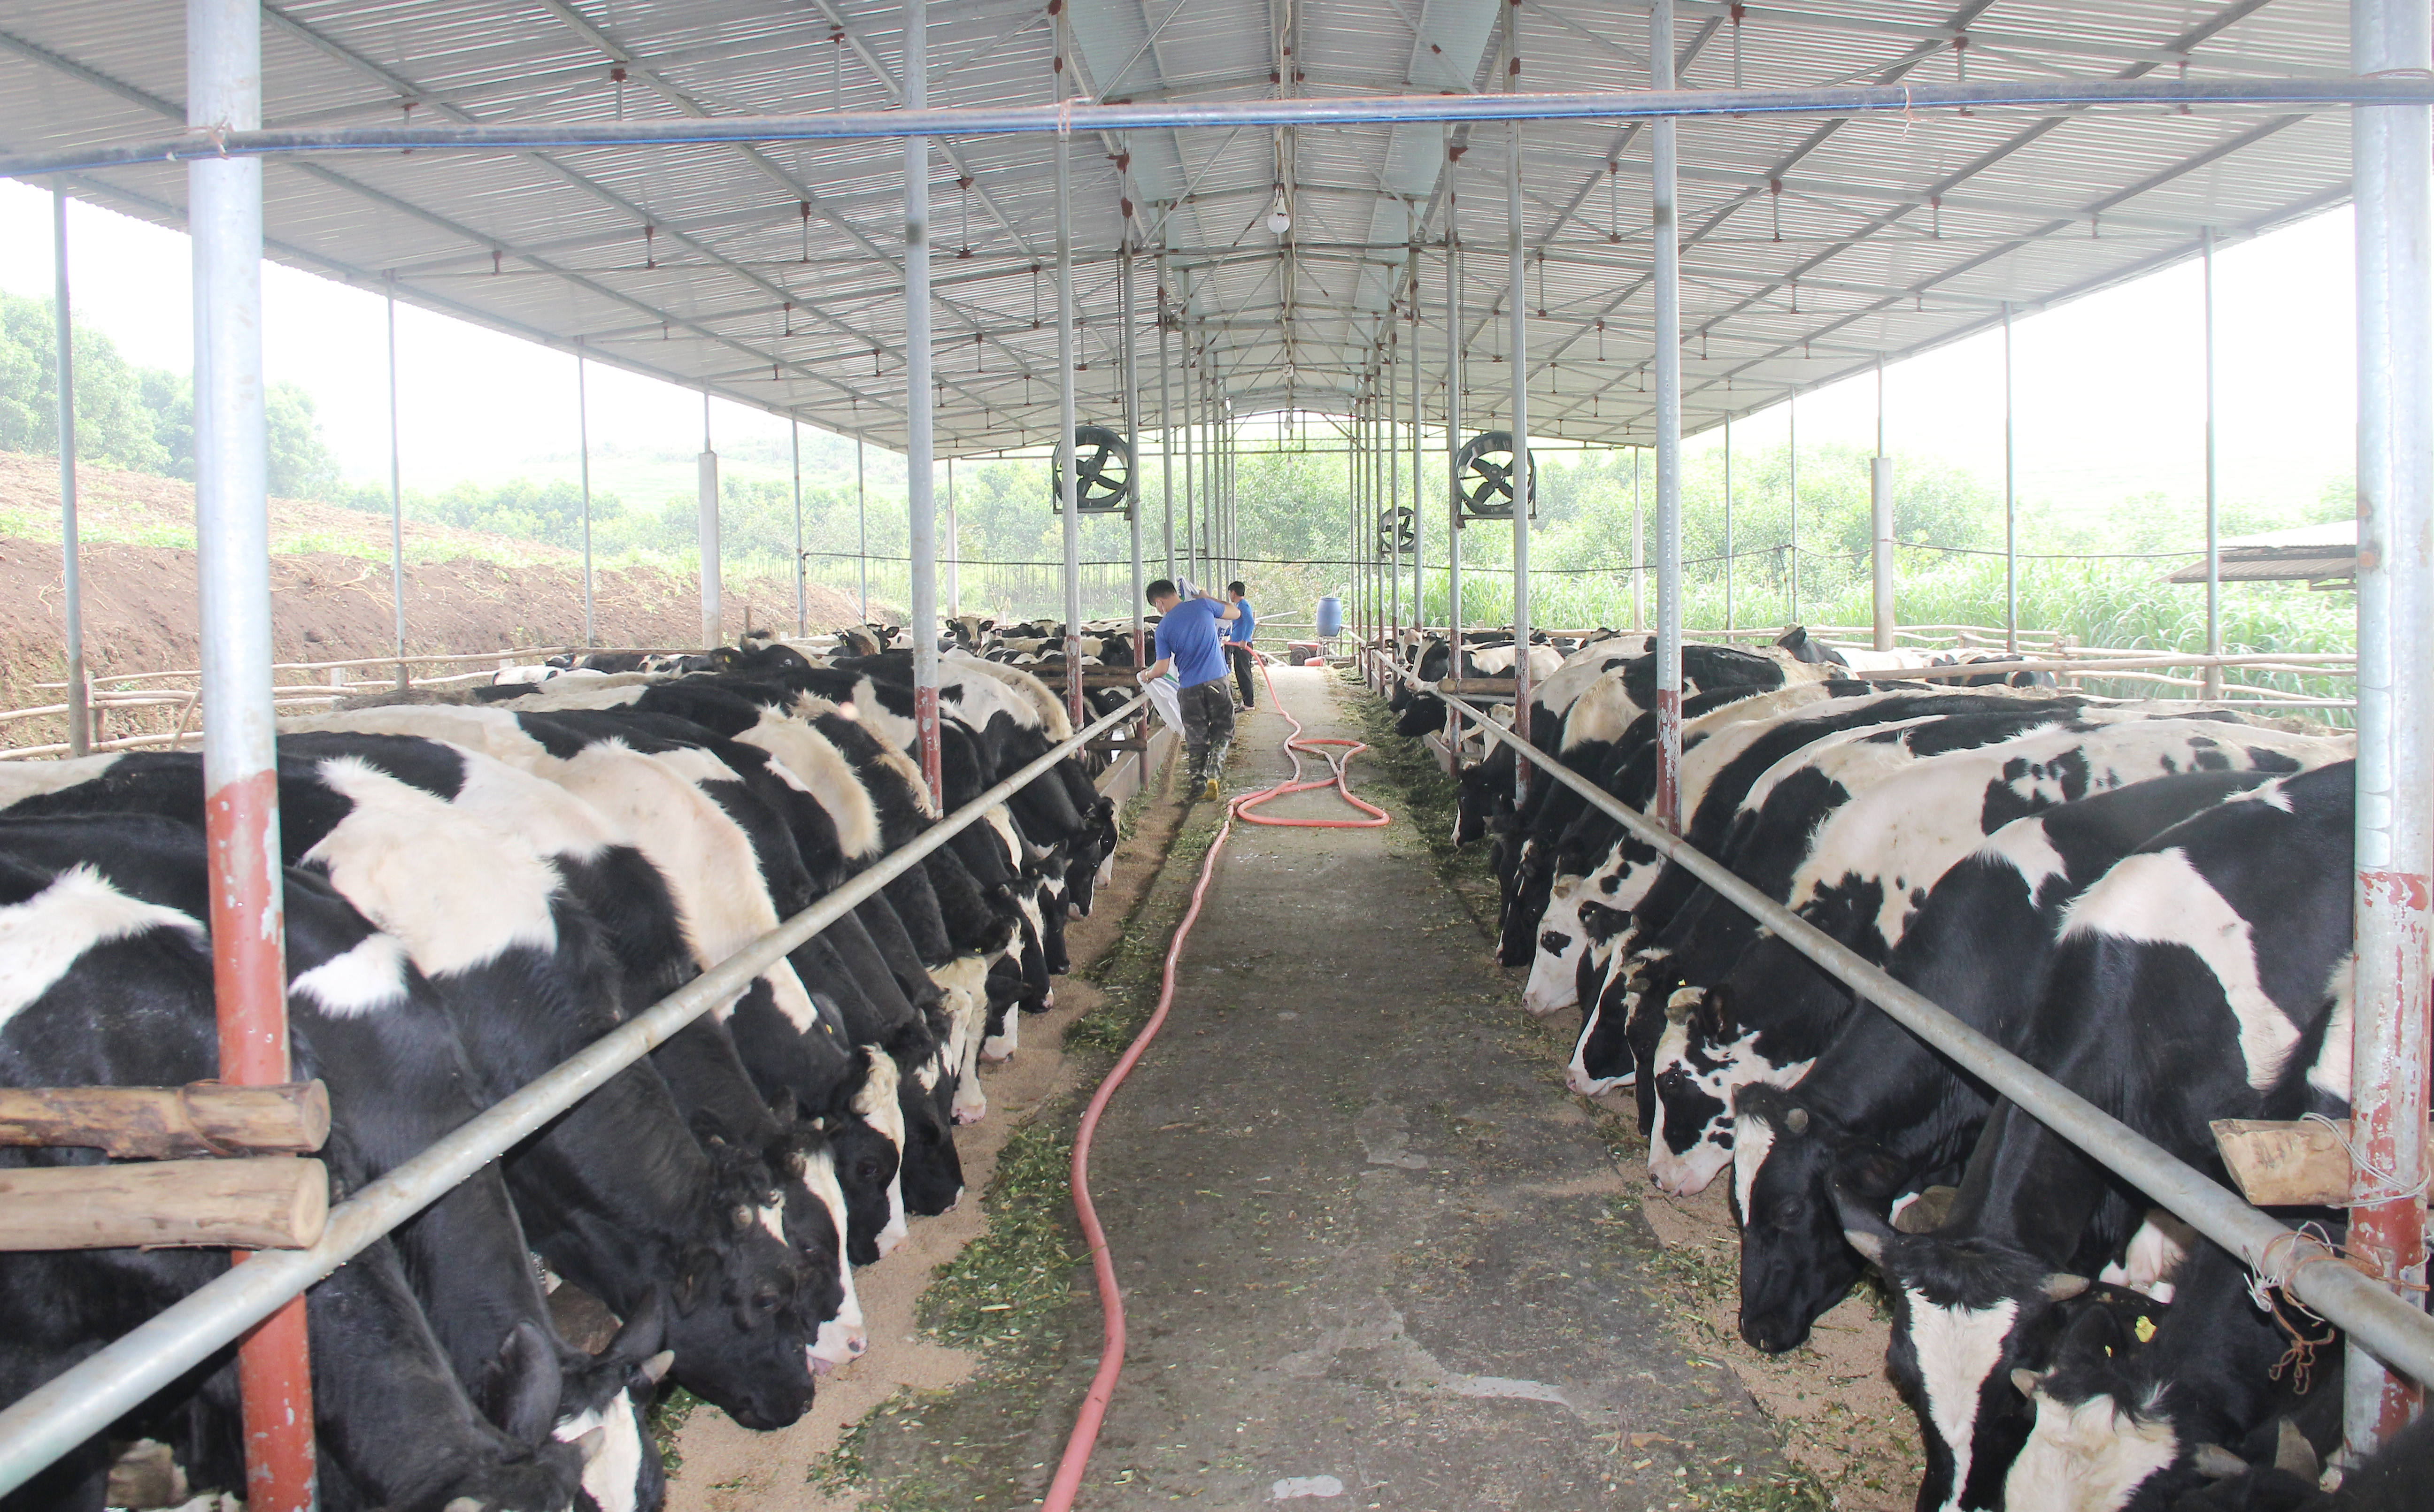 hi xã Thái Hòa đẩy mạnh sản xuất nông nghiệp công nghệ cao. Mô hình chăn nuôi bò sữa thải loại thành bò thương phẩm tại phường Long Sơn